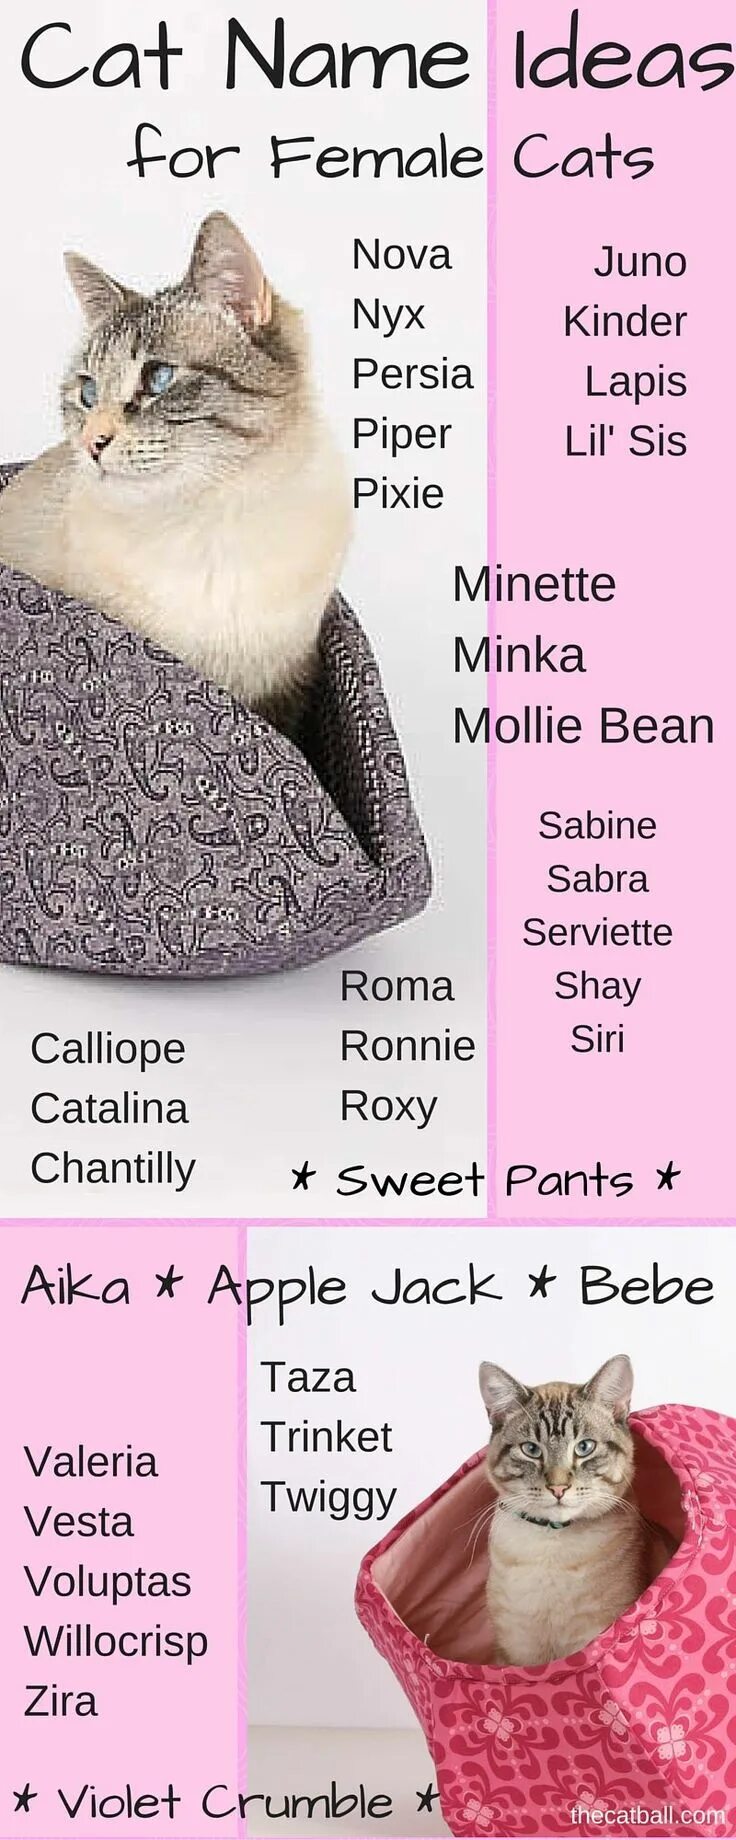 Cat s name is. Красивые кошачьи имена для кошек. Имя для кошечки. Клички для кошек девочек. Красивые имена для кошек девочек.